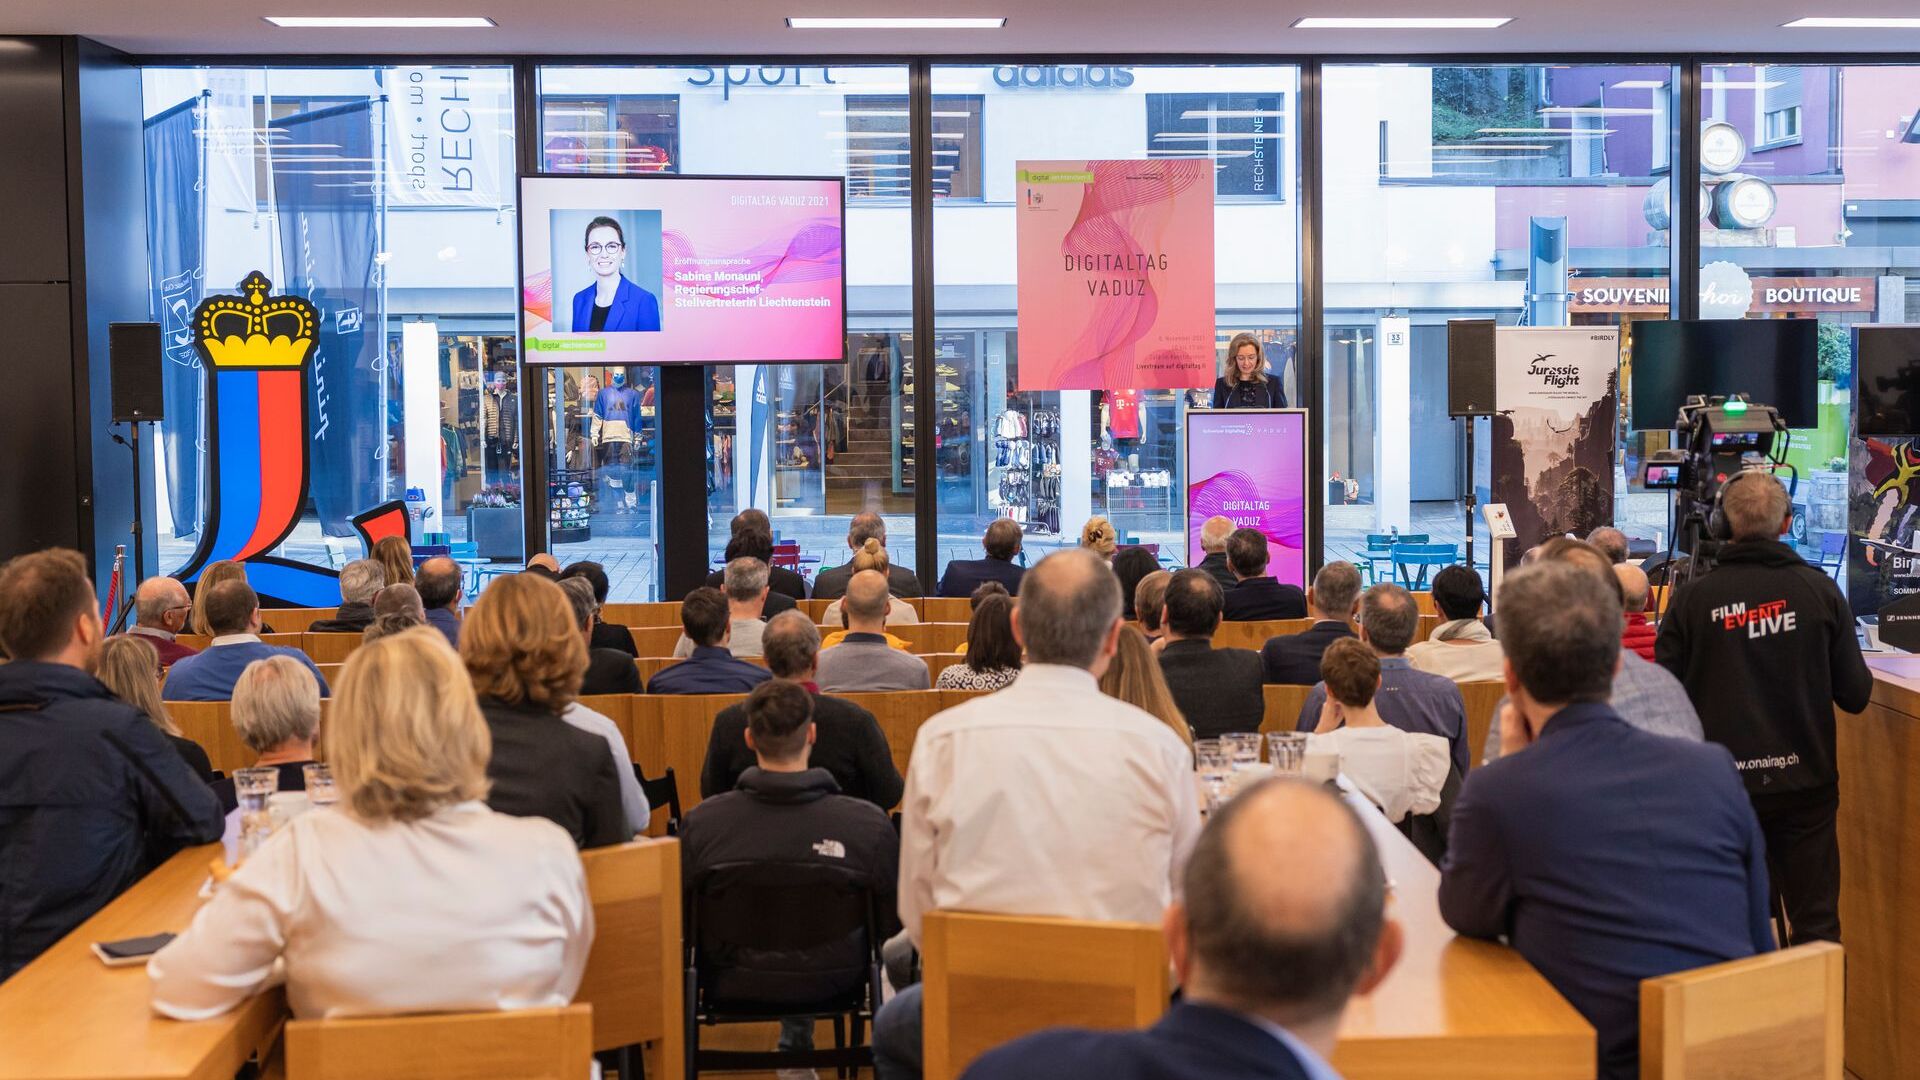 La “Digitaltag Vaduz”, accolta dal Kunstmuseum della capitale del Principato del Liechtenstein sabato 6 novembre 2021, ha suscitato l’entusiasmo di pubblico e relatori in analogia con la “Giornata Digitale Svizzera” del successivo giorno 10: l'intervento della Vice Primo Ministro Sabine Mounani